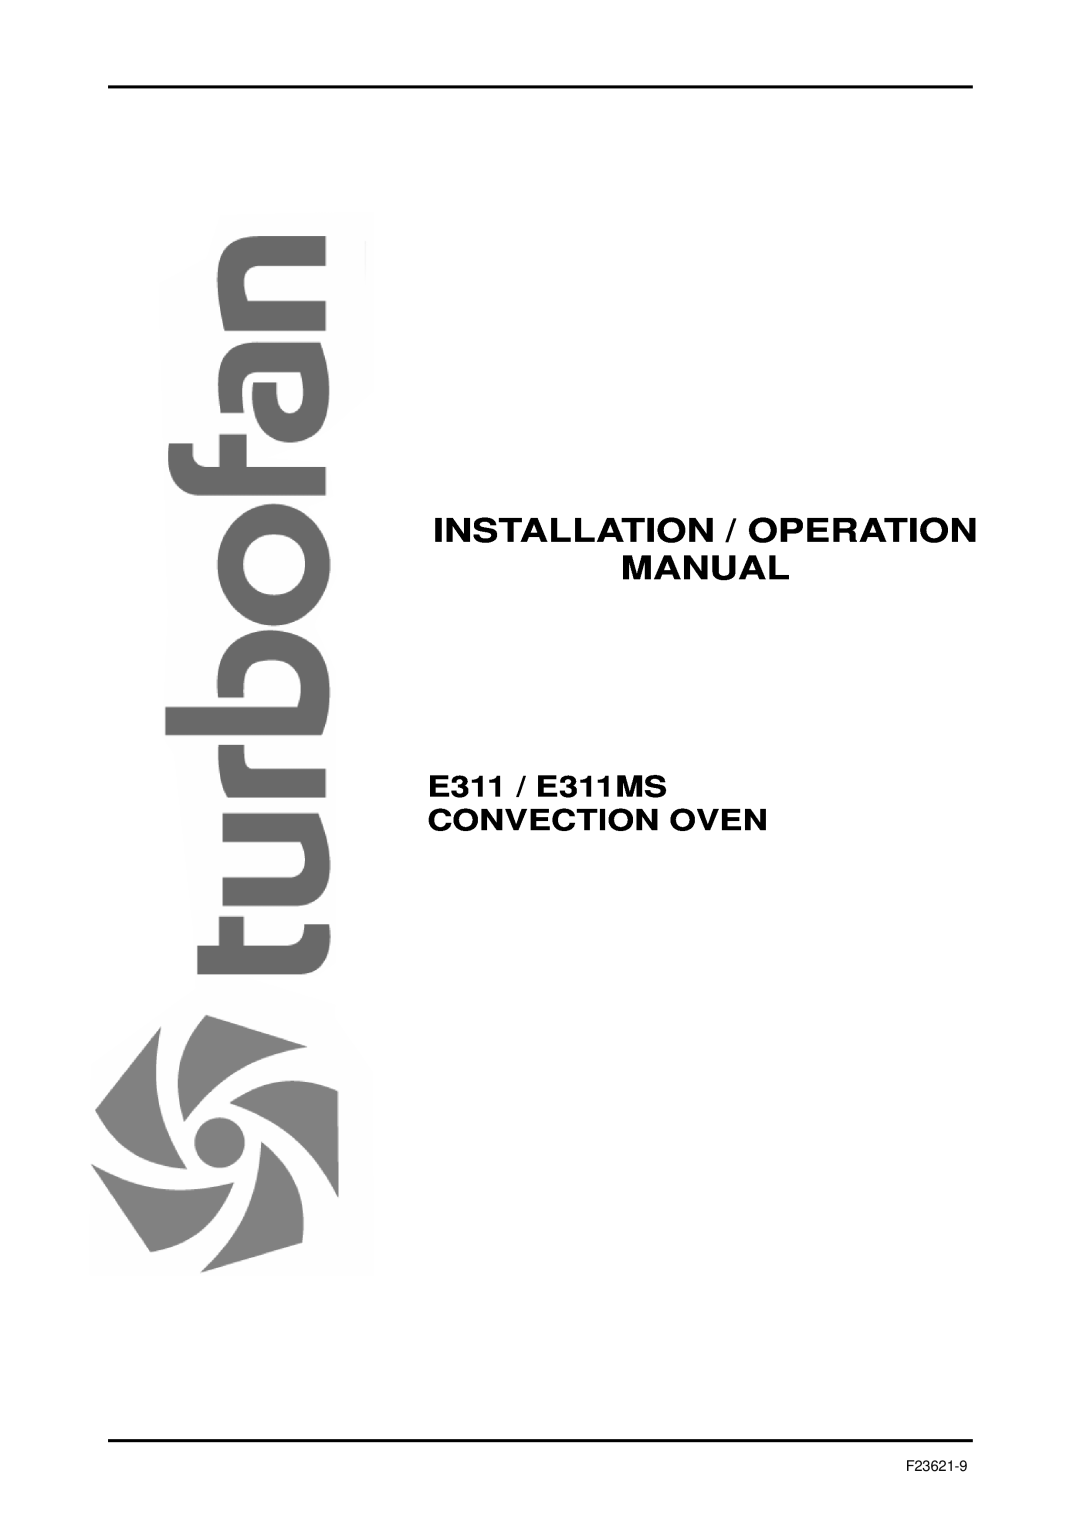 Moffat operation manual E311 / E311MS CONVECTION OVEN, F23621-9 